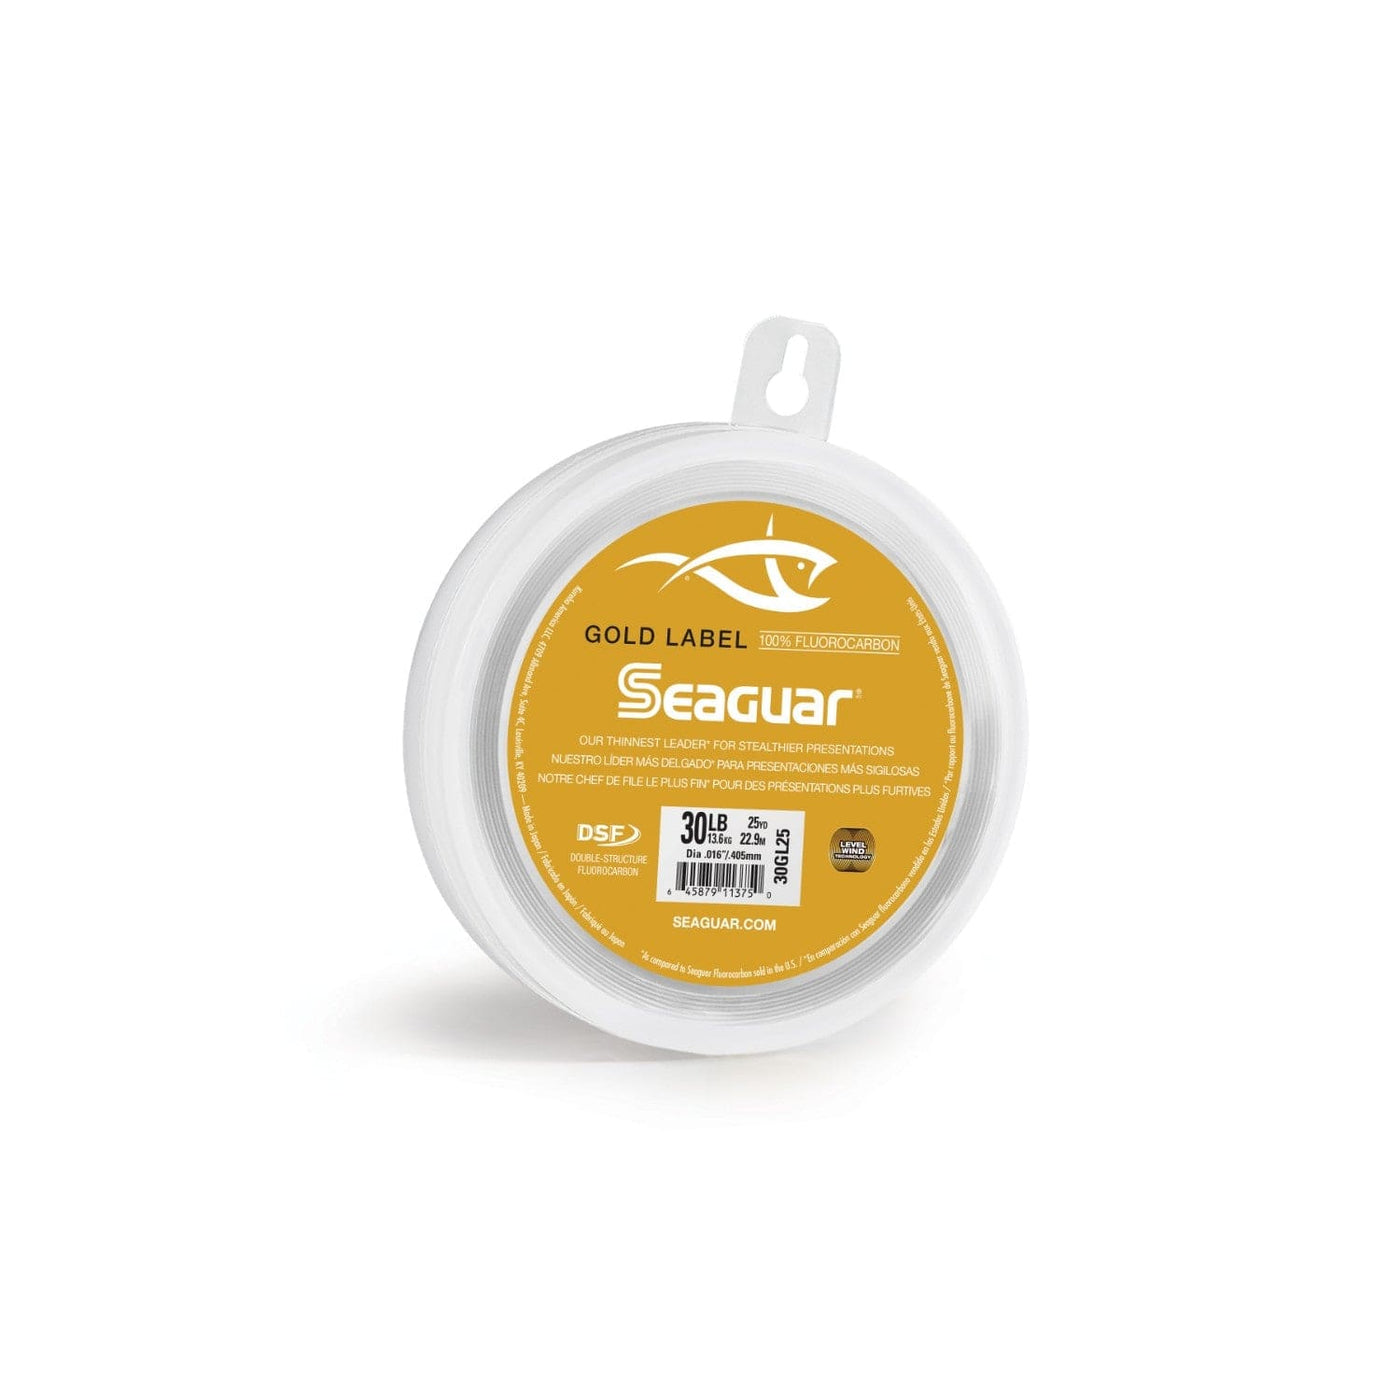 Seaguar Seaguar Gold Label 25 40GL25 Flourocarbon Leader Fishing